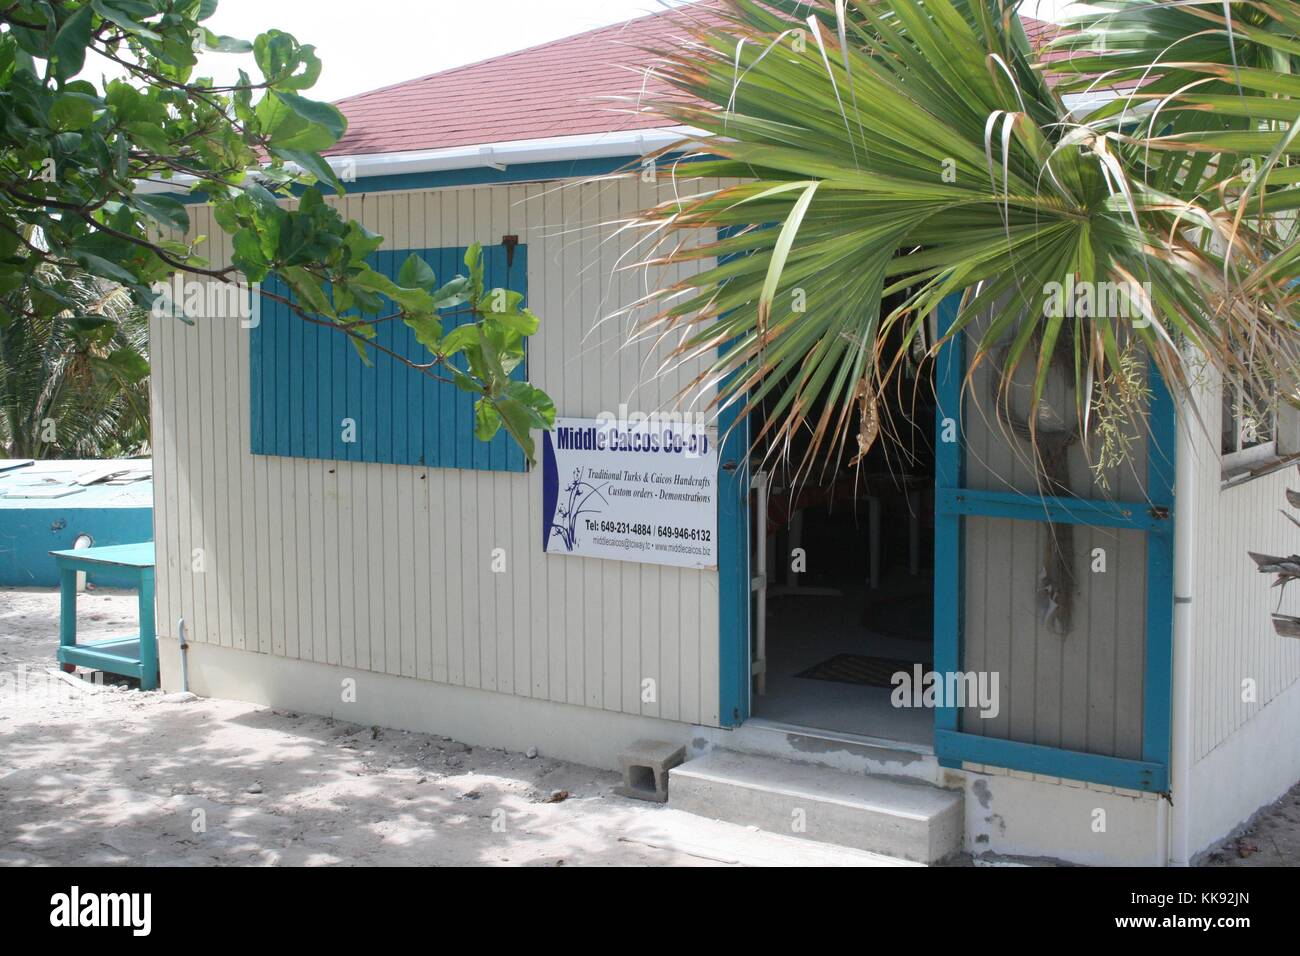 Ein Foto von der Außenseite des Mittleren Caicos Co-Op, die hölzernen Gebäude auf die Fenster und Türen lackiert ist weiß und Akzente in Blau, Palmen im Vordergrund und Hintergrund gesehen werden kann, der Speicher stellt lokale Künstler, Souvenirs für Touristen produzieren, Turks- und Caicosinseln, 2013. Stockfoto